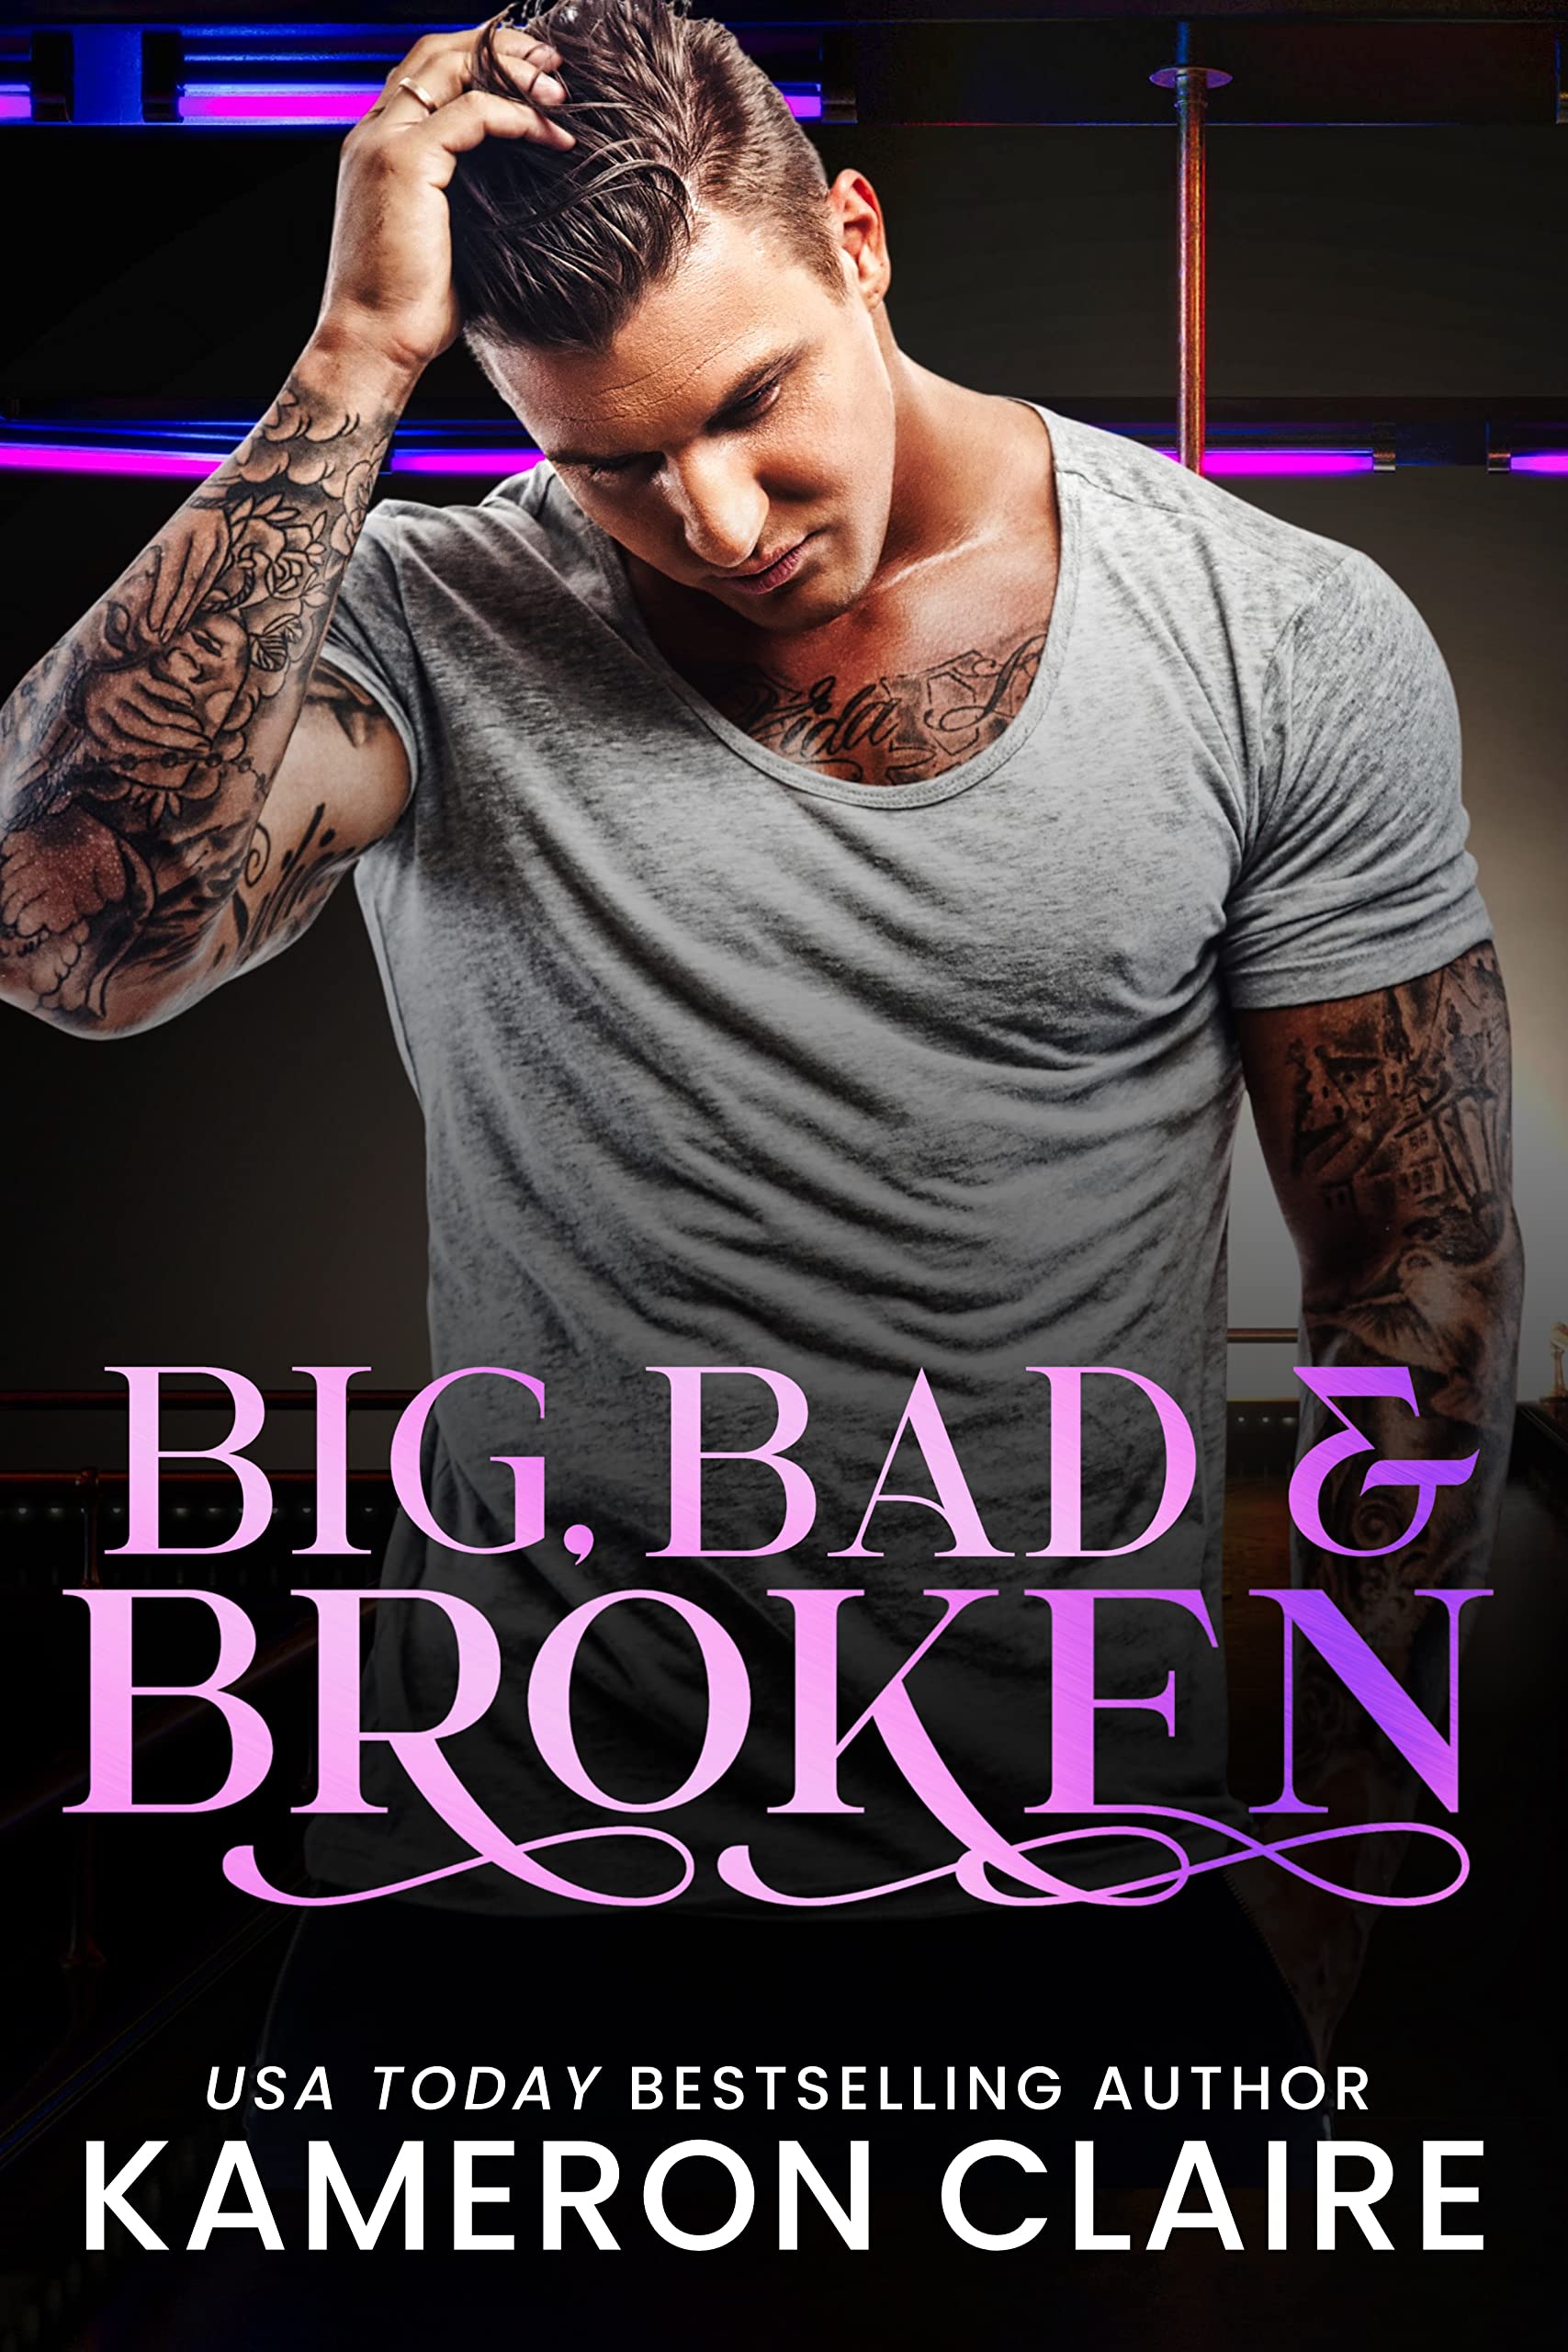 Big, Bad & Broken by Kameron Claire PDF Download